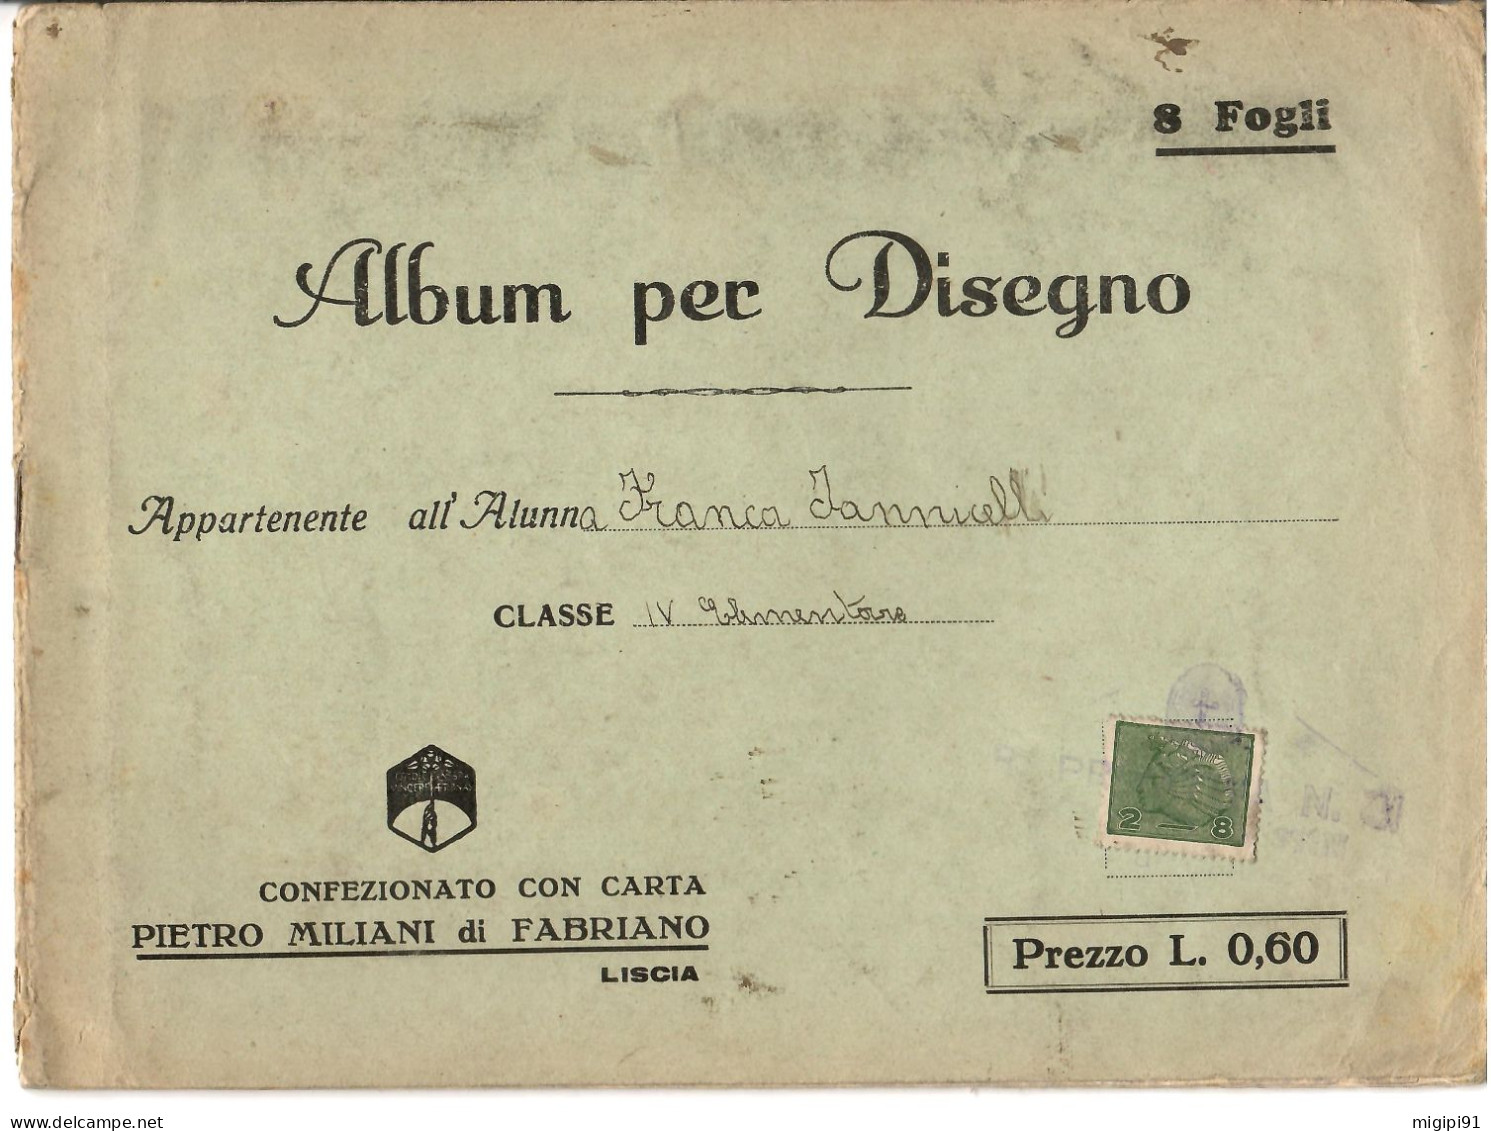 § Album Per Disegno Con Carta PIETRO MILANI Di FABRIANO-COOPERATIVA DI PRODUZIONE E LAVORO FRA CIECHI DI GUERRA§ § - Weltkrieg 1914-18